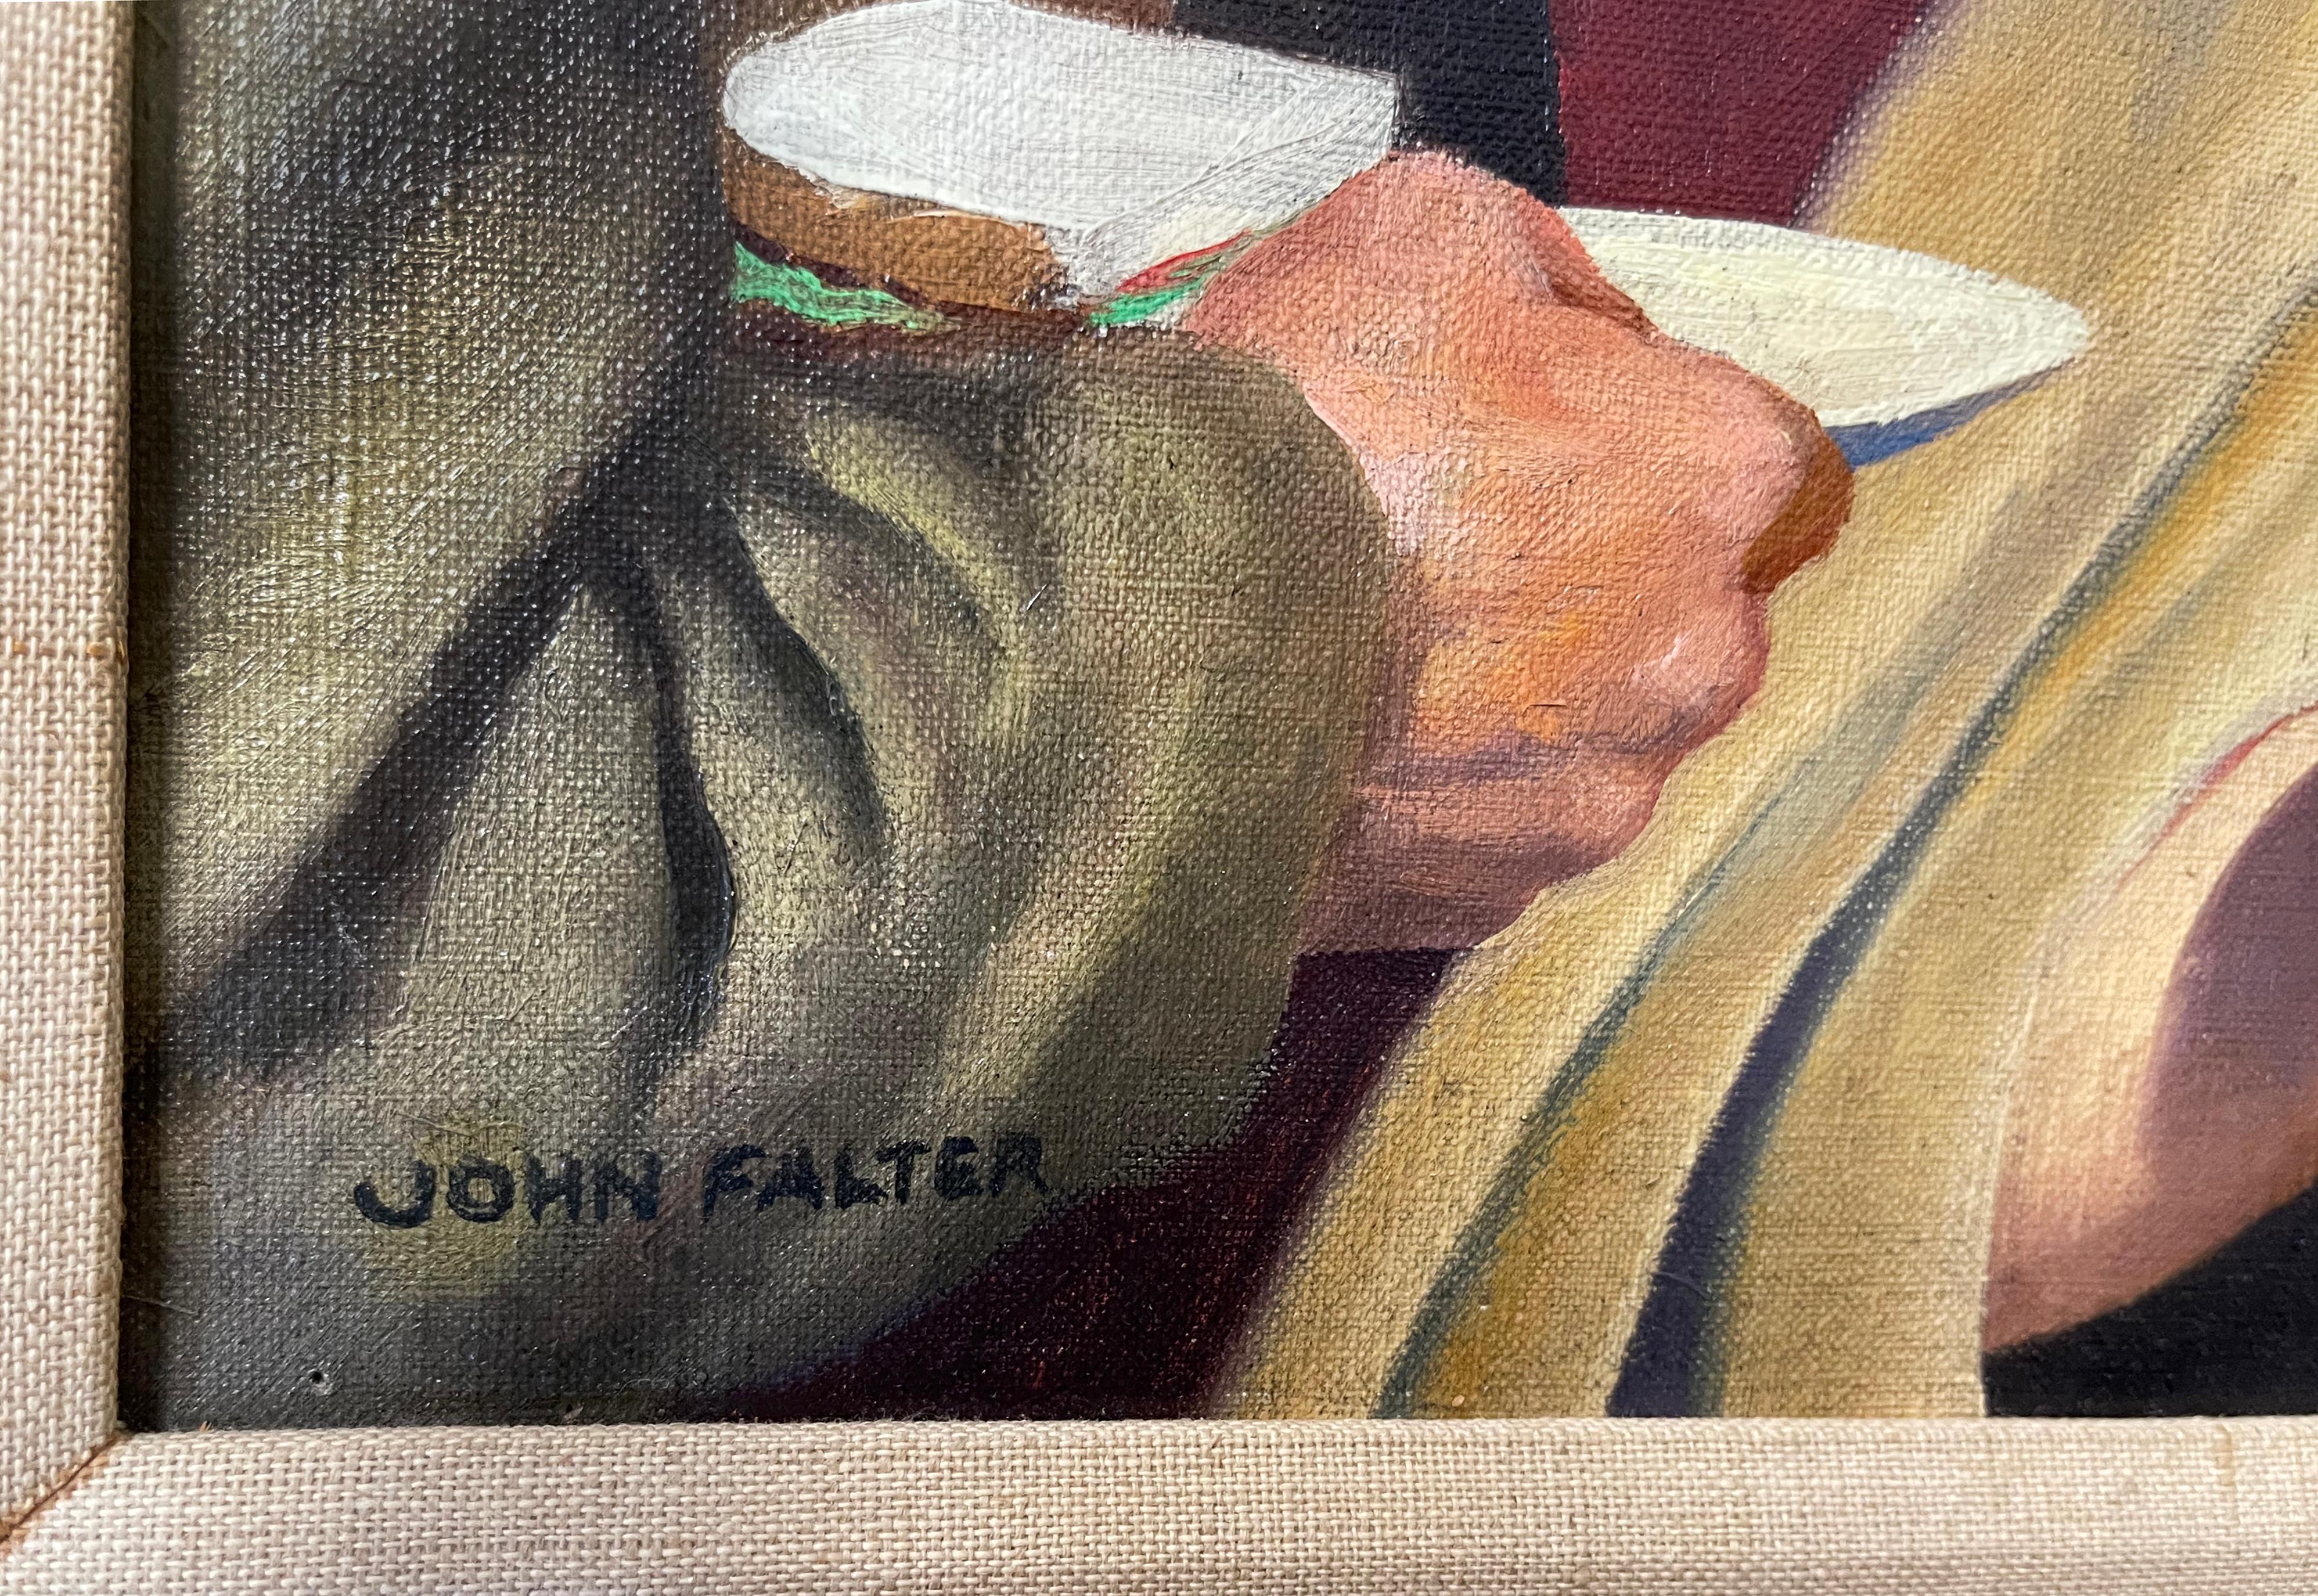 john falter paintings for sale